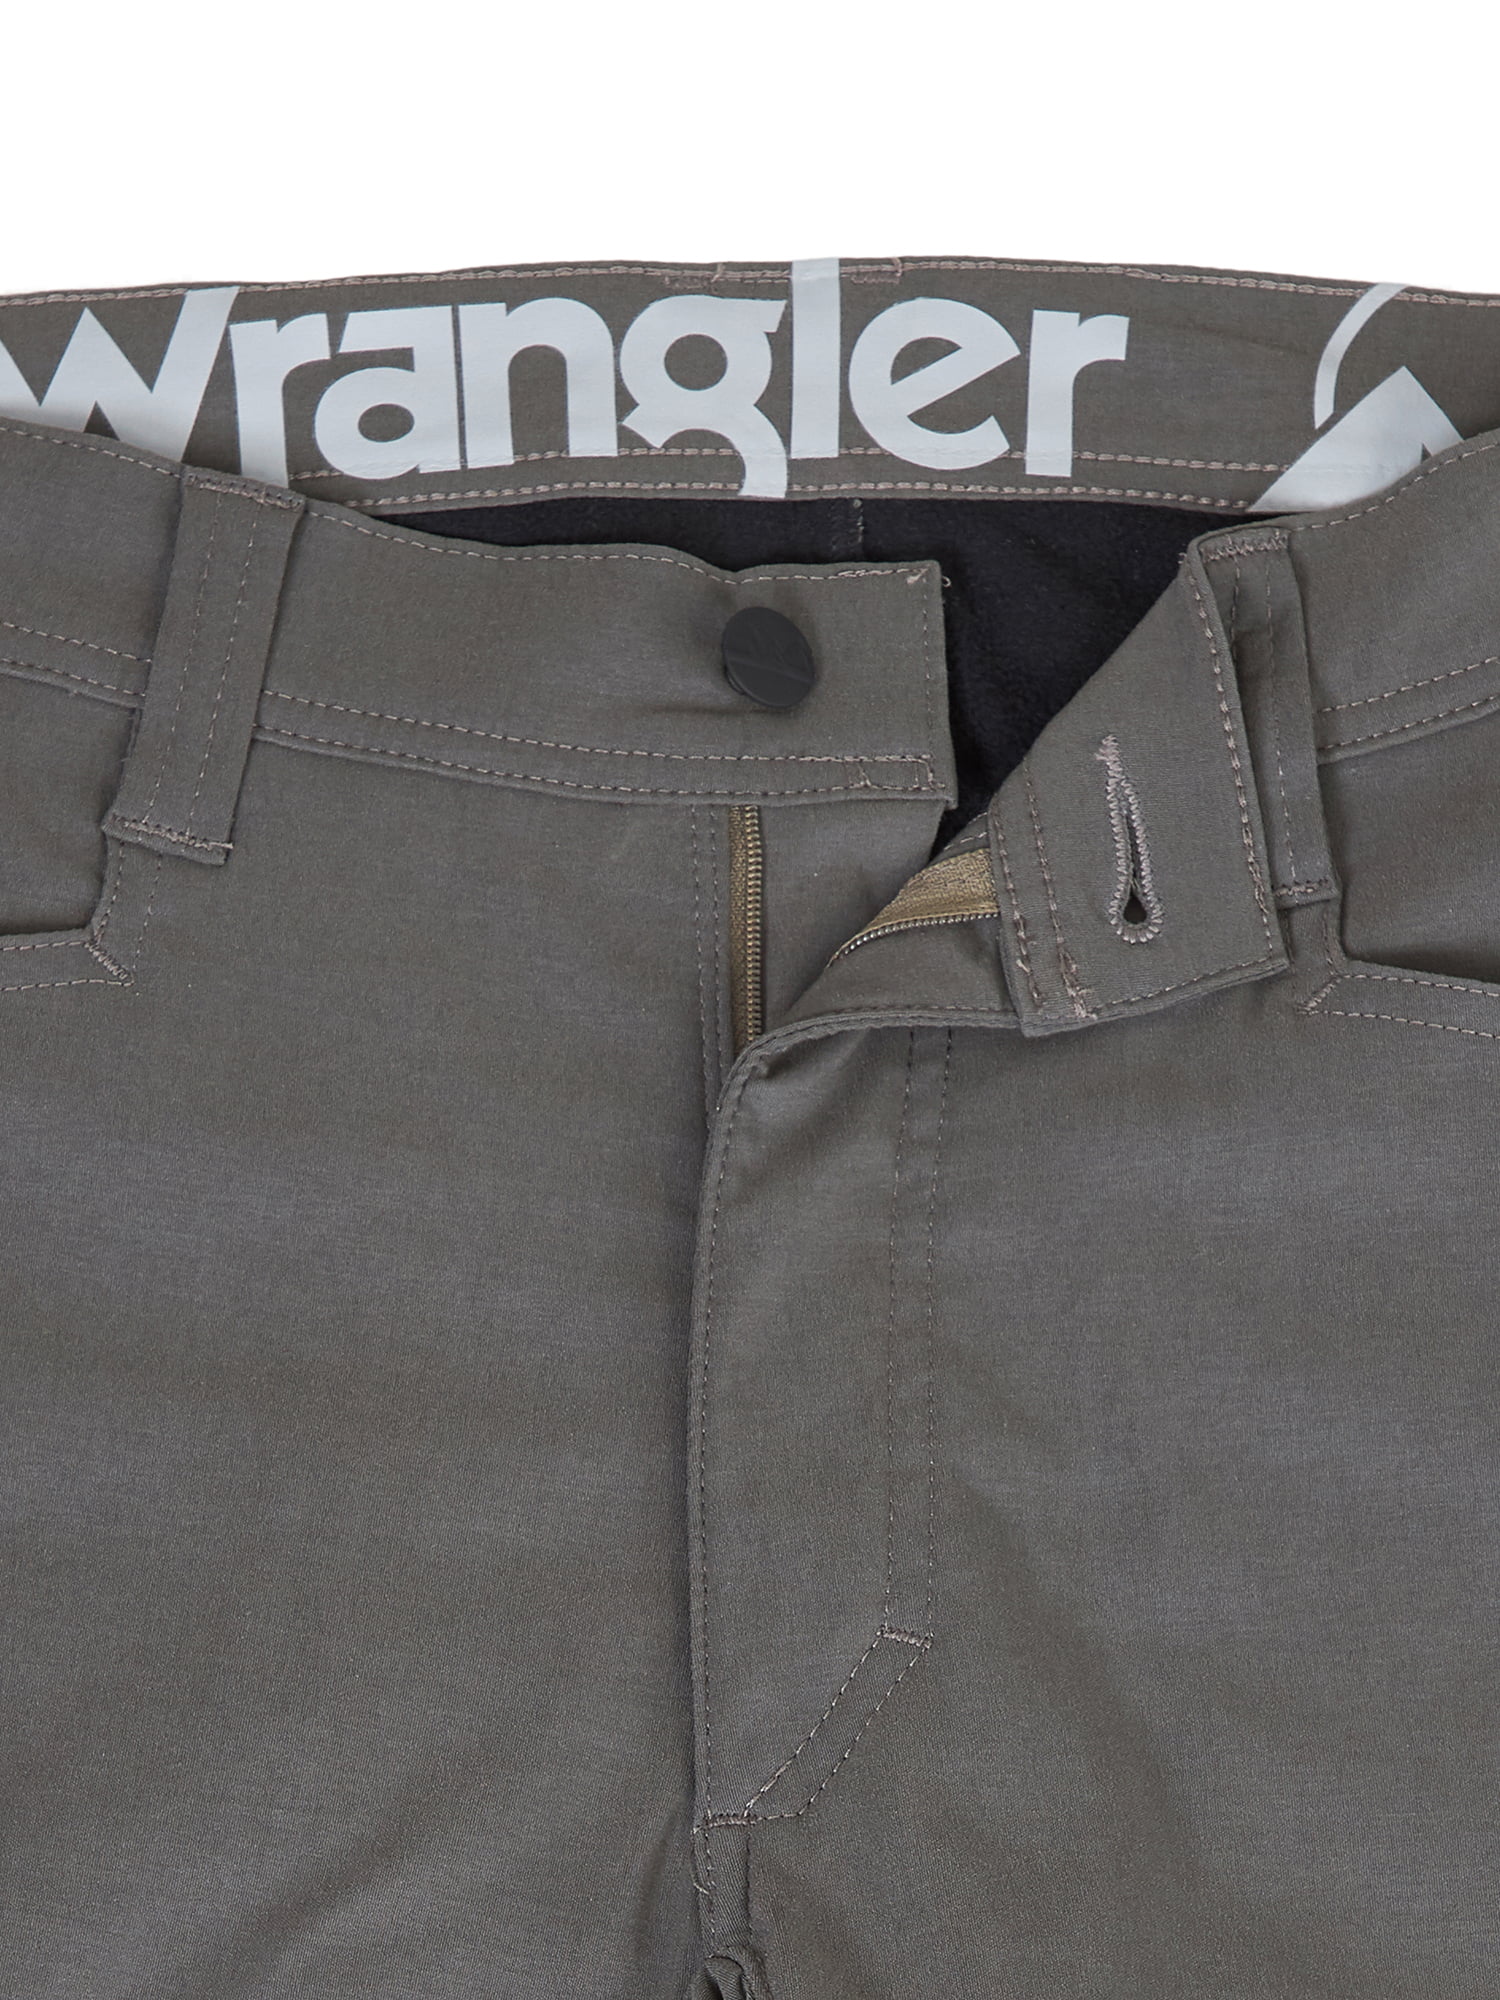 walmart fleece lined cargo pants